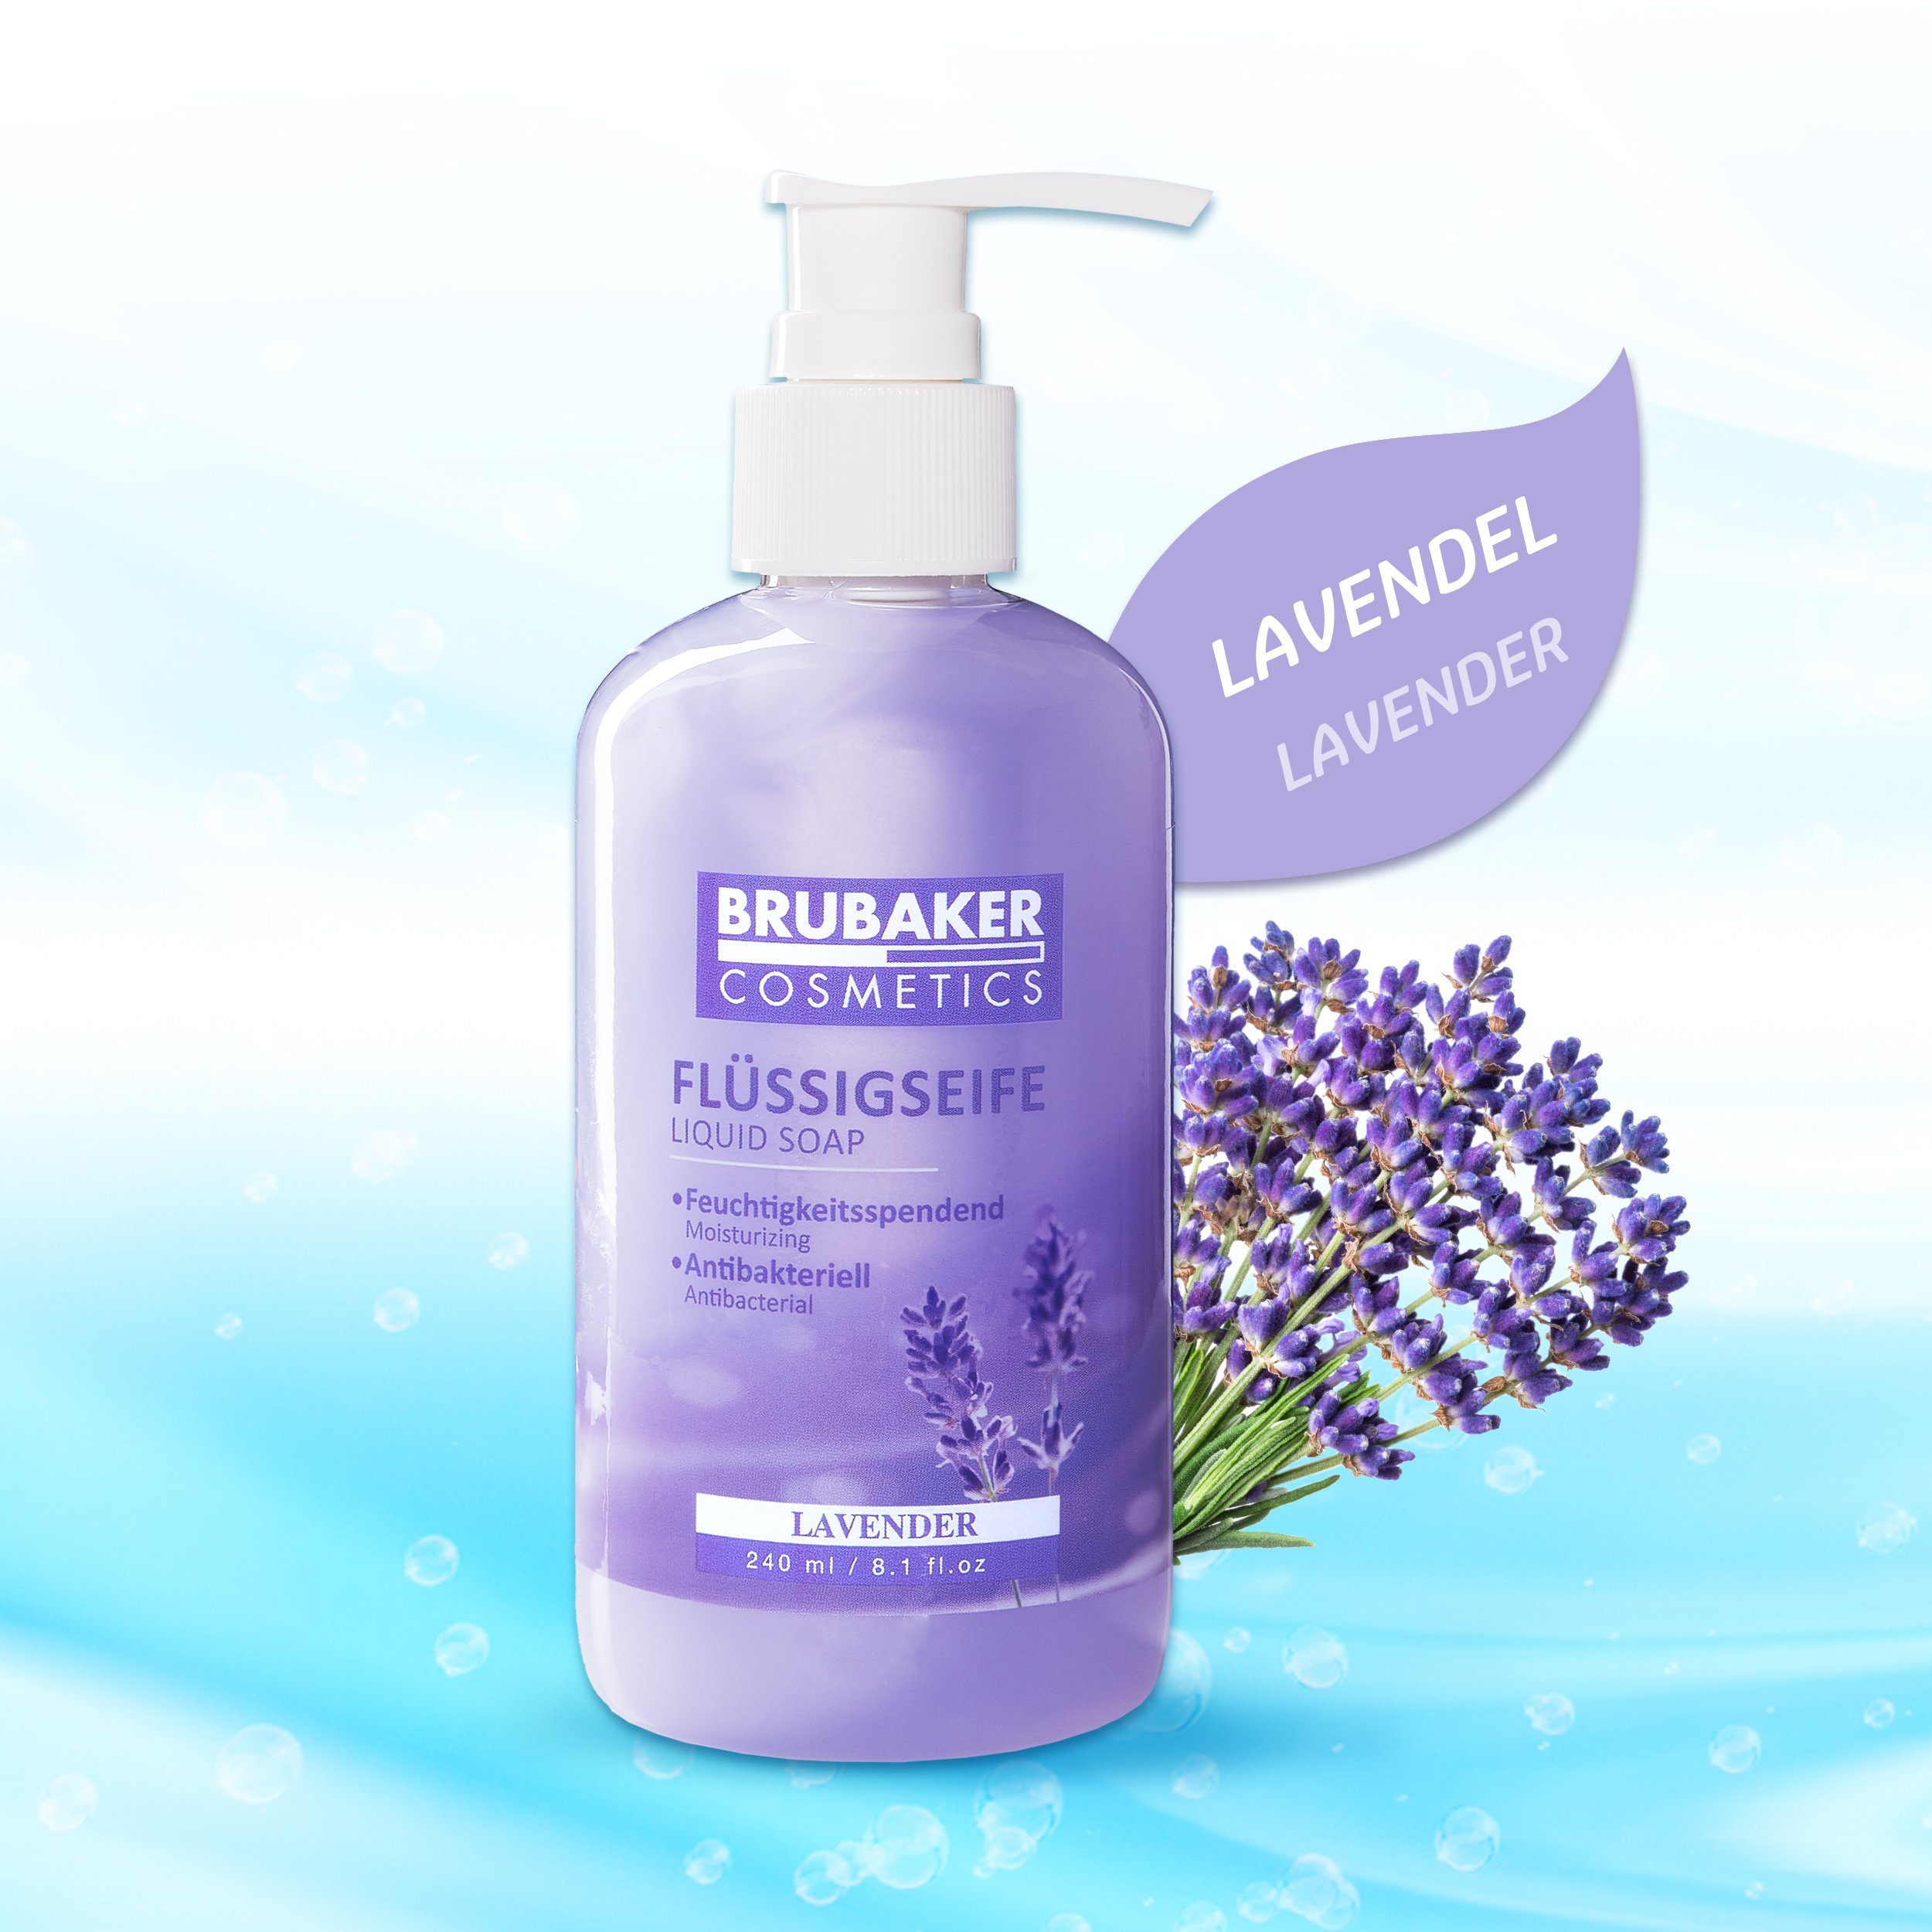 Flüssigseife Lavendel BRUBAKER Duft, Spender Handseife praktischen Seife flüssig feuchtigkeitsspendend, im 1-tlg., mit